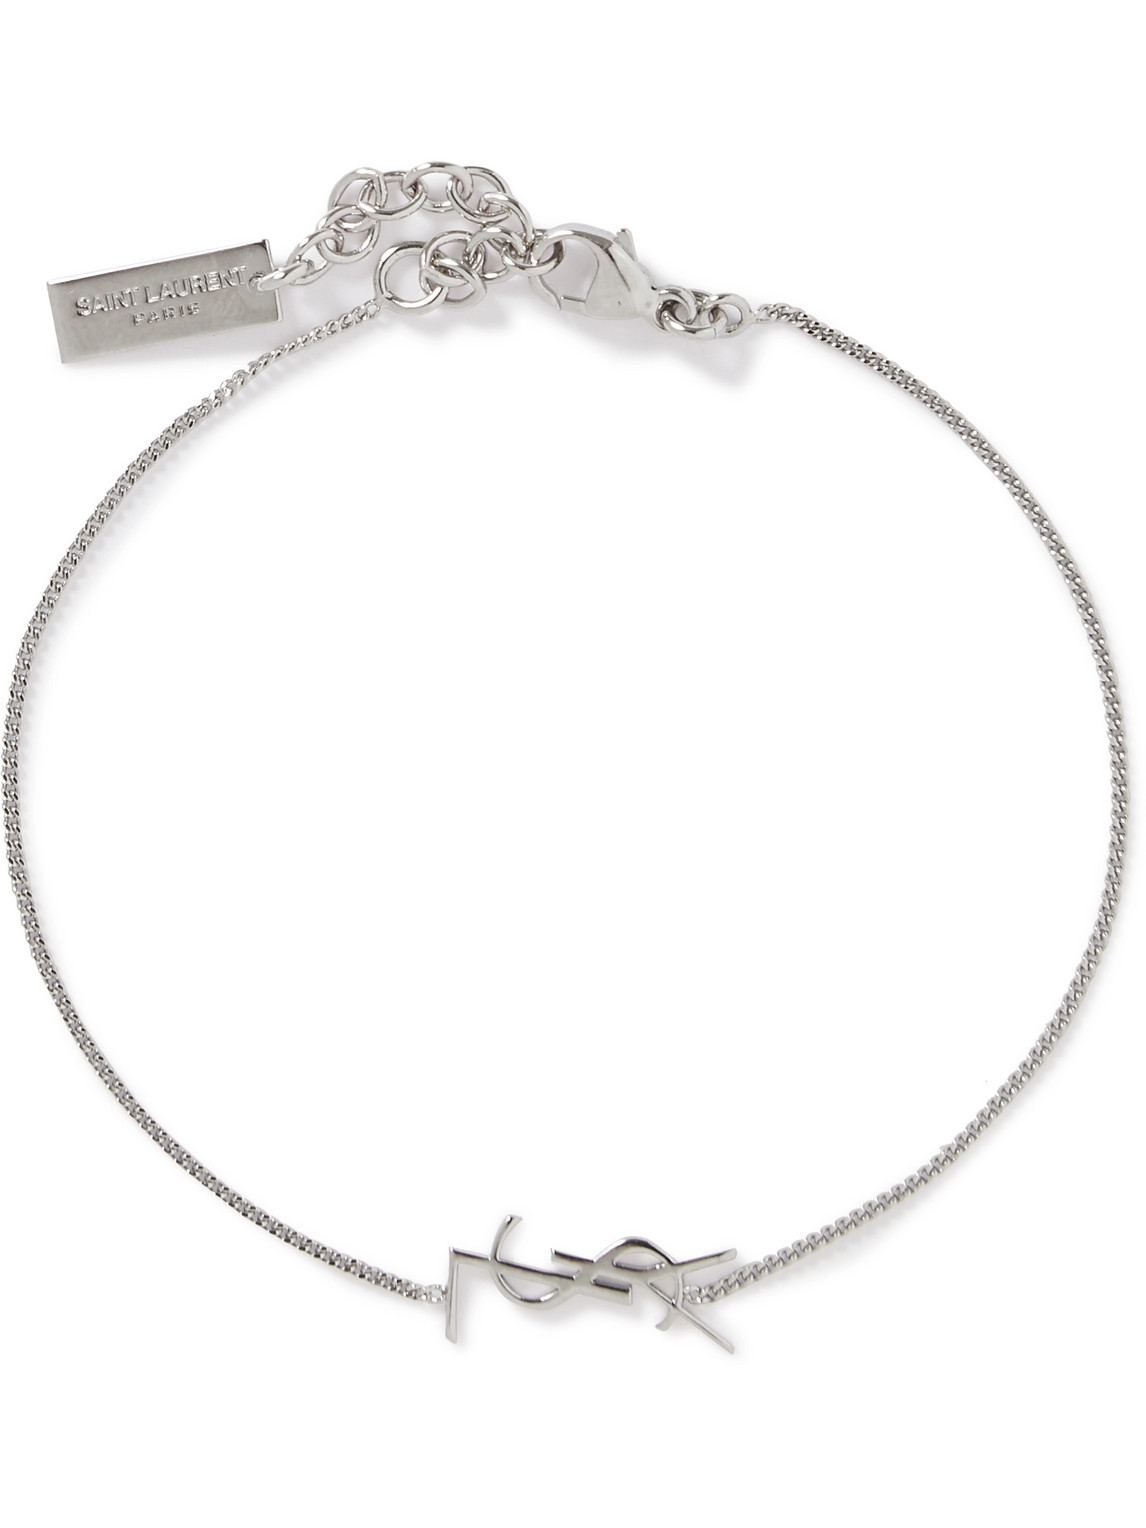 SAINT LAURENT - Logo-Detailed Silver-Tone Chain Bracelet - Men - Silver - M von SAINT LAURENT